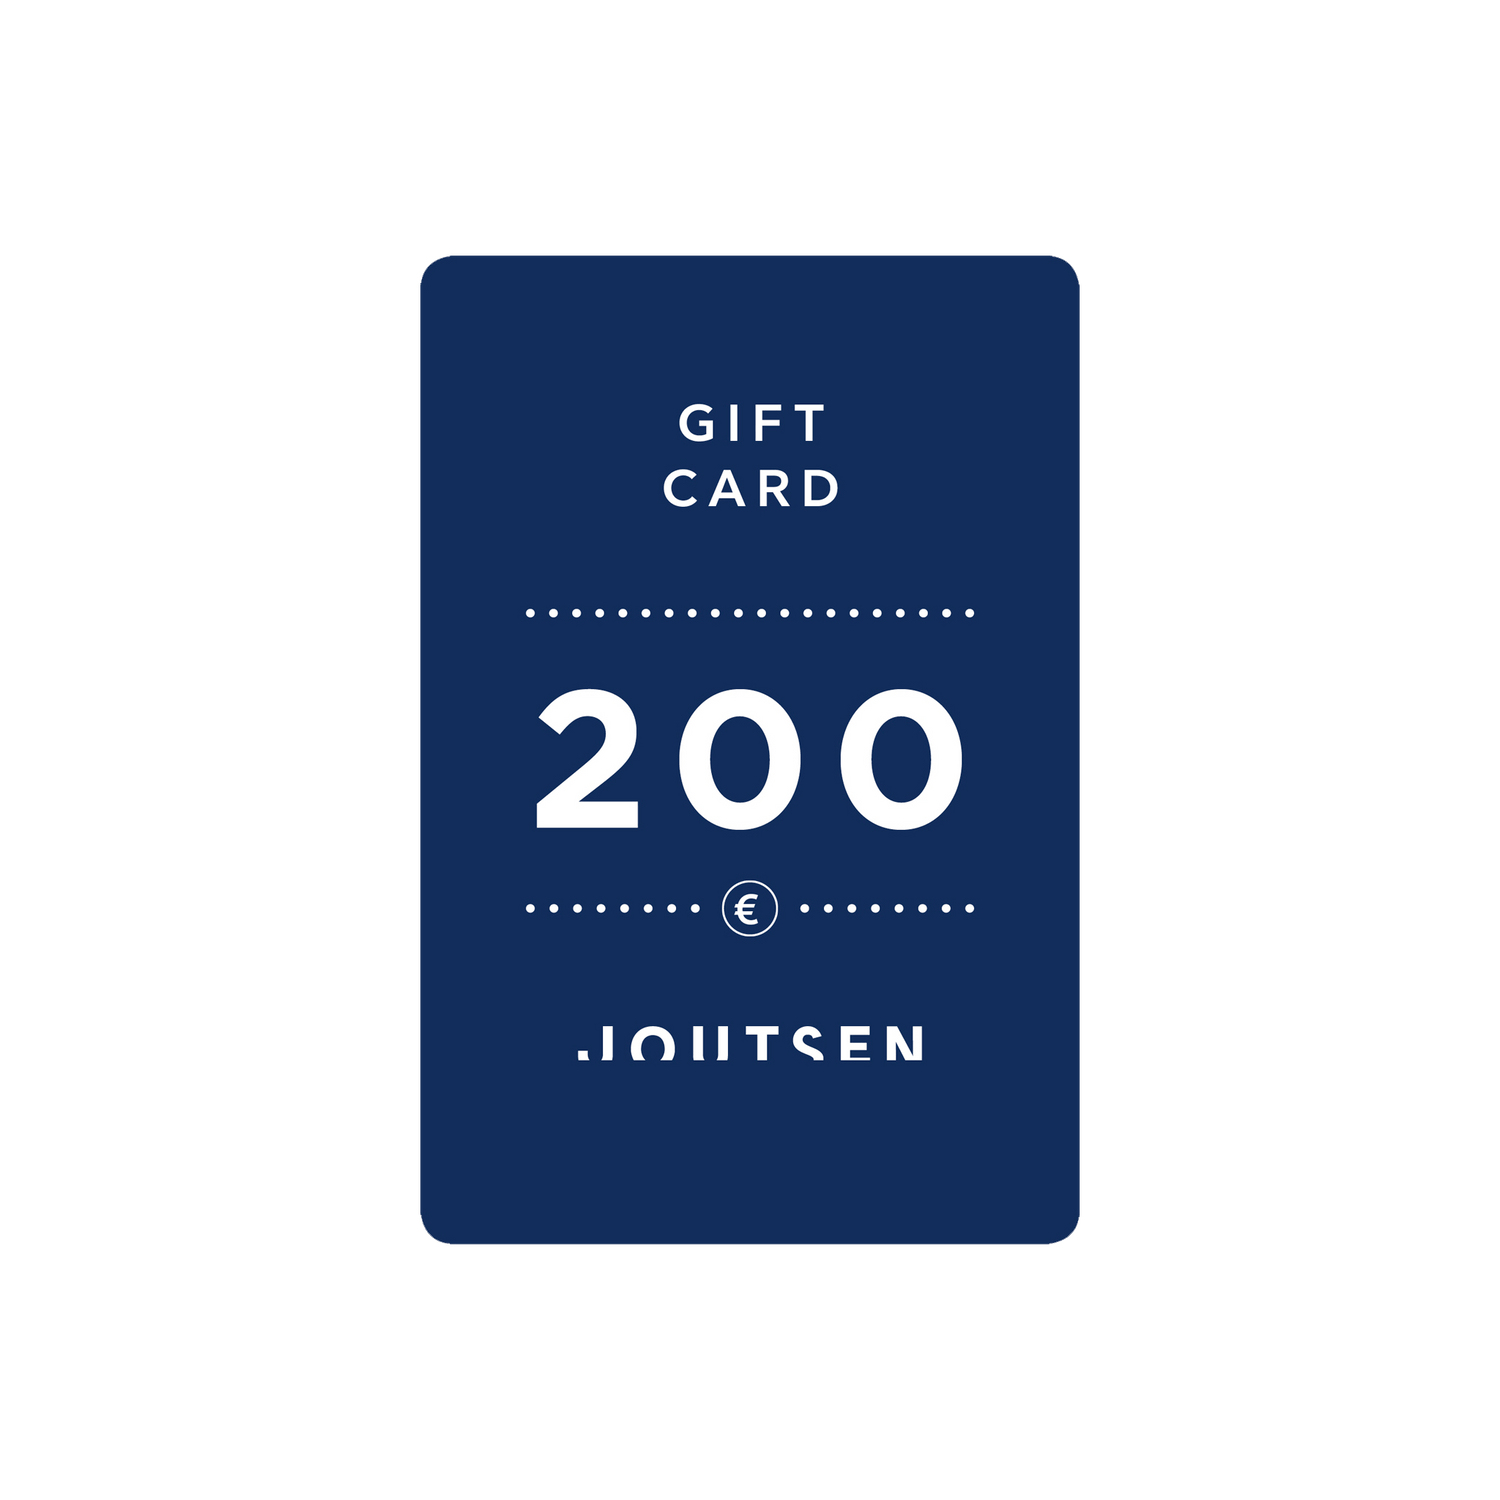 Gift Card - Joutsen - 200 €